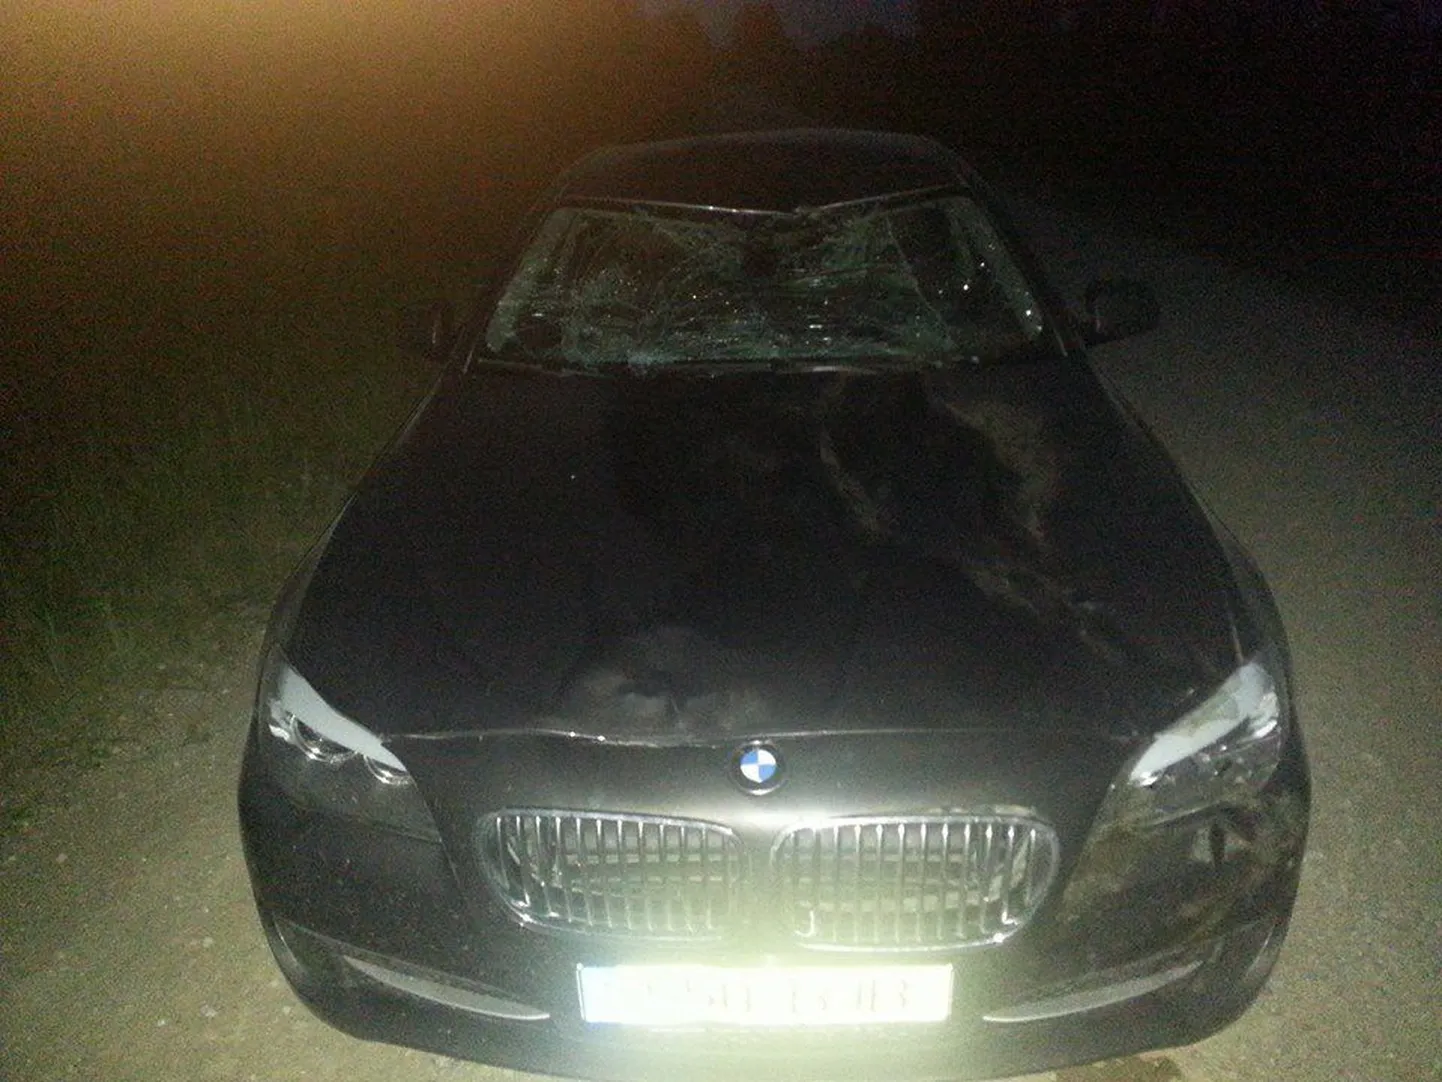 Priit Toobali kasutada olev BMW 520 sai kokkupõrkel põdraga tugevalt kahjustada.